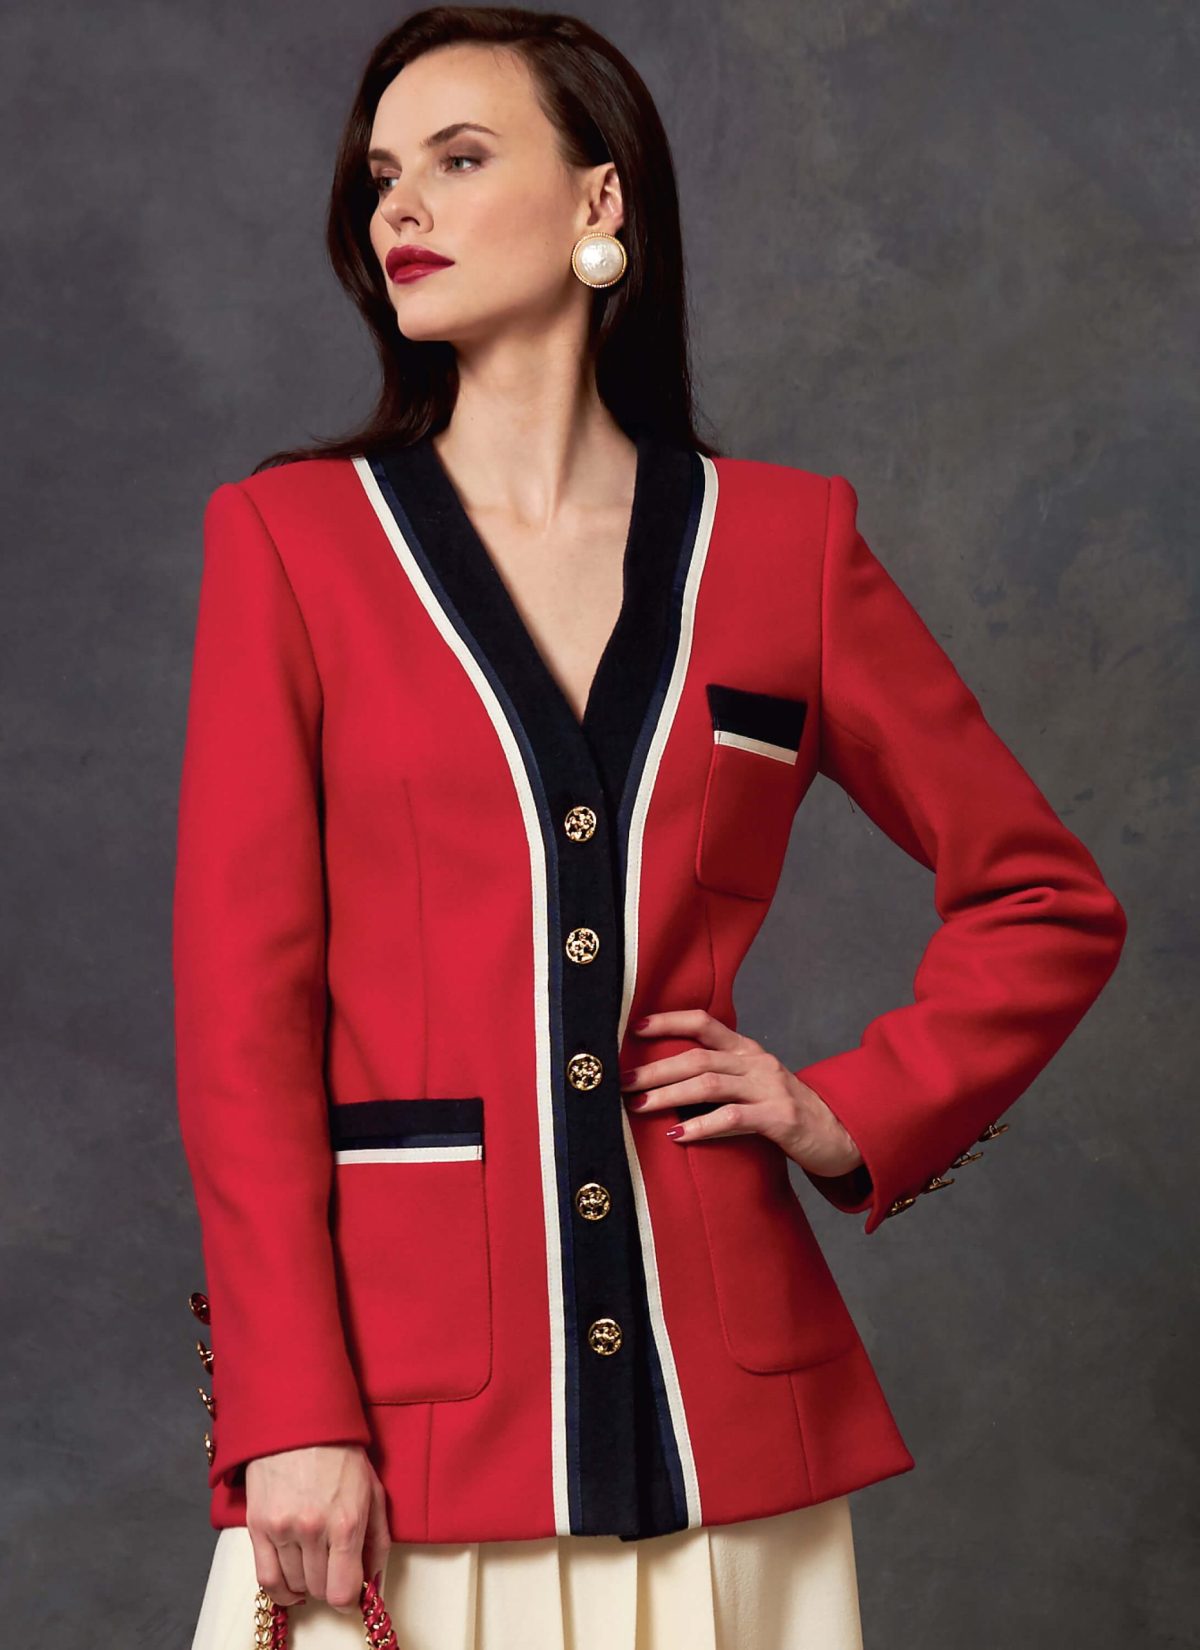 Vogue Patterns V1643 Misses'/Misses' Petite Jacket, Dress and Skirt